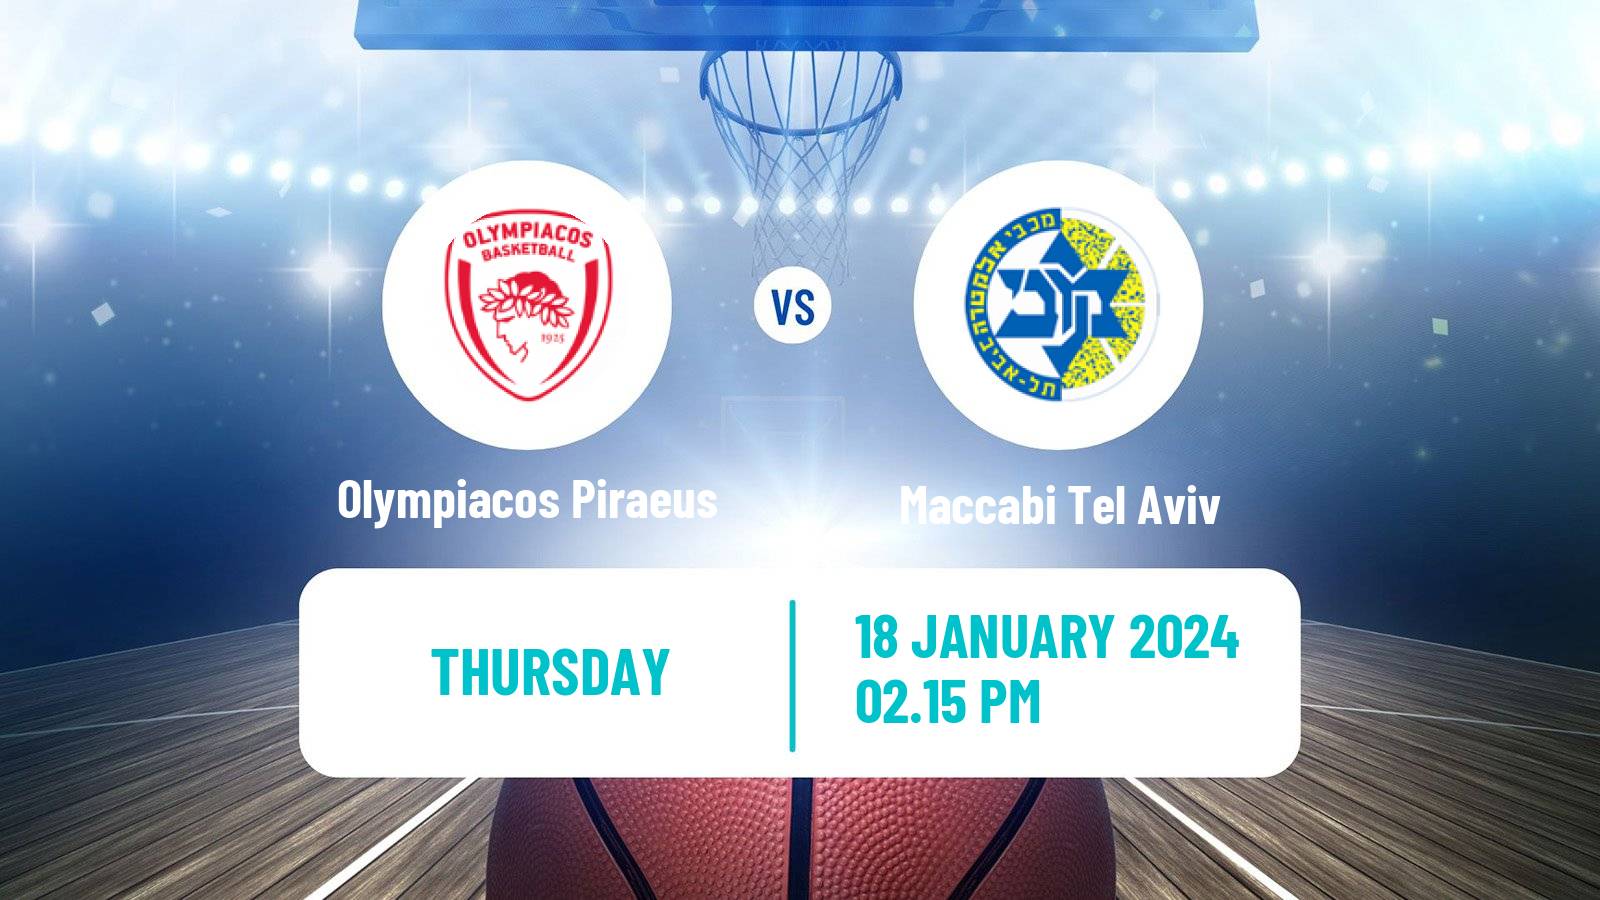 Basketball Euroleague Olympiacos Piraeus - Maccabi Tel Aviv